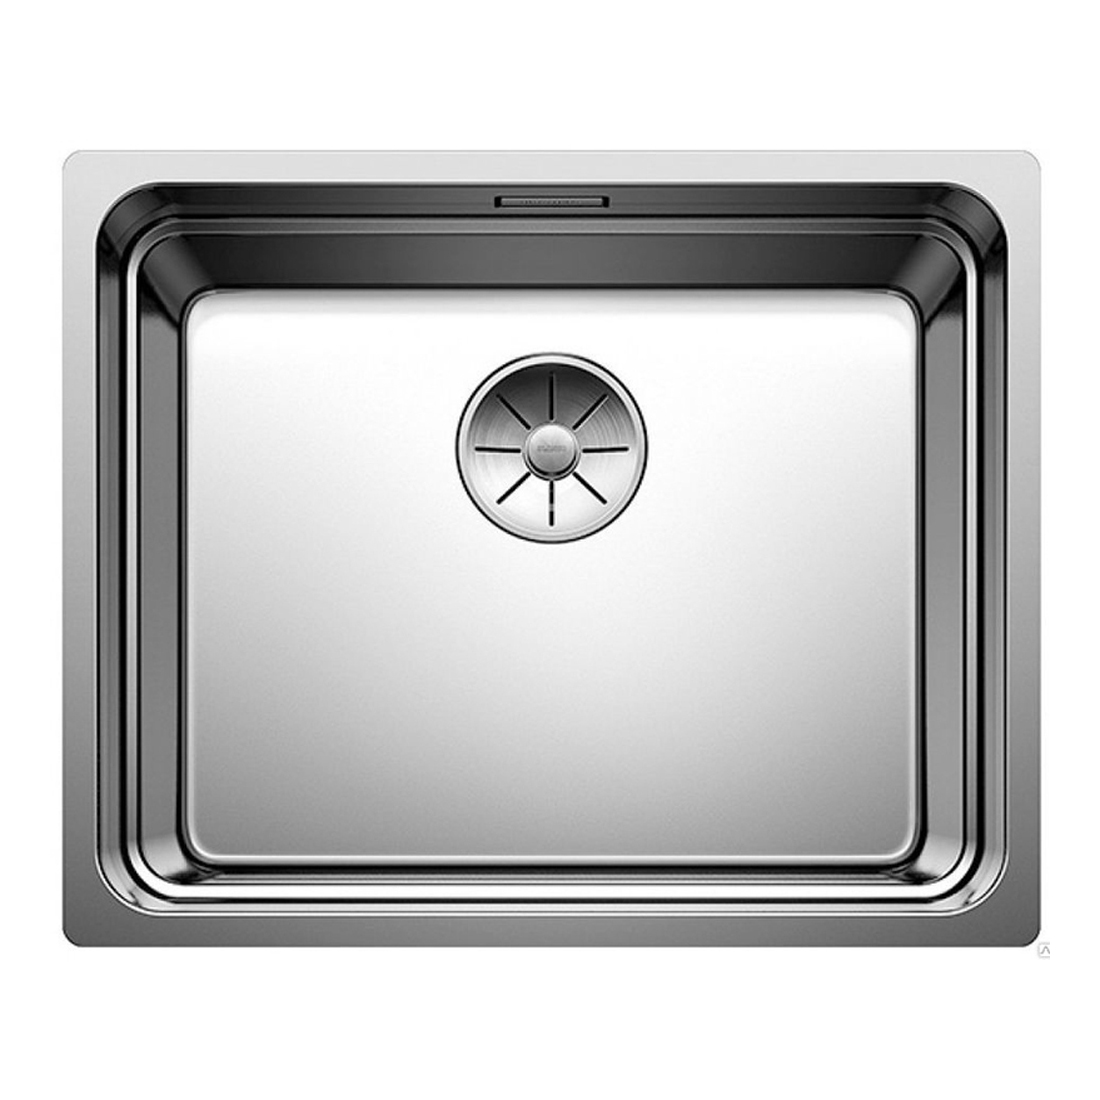 Кухонная мойка Blanco Etagon 500-U полированная сталь кухонная мойка franke 127 0688 779 нержавеющая сталь